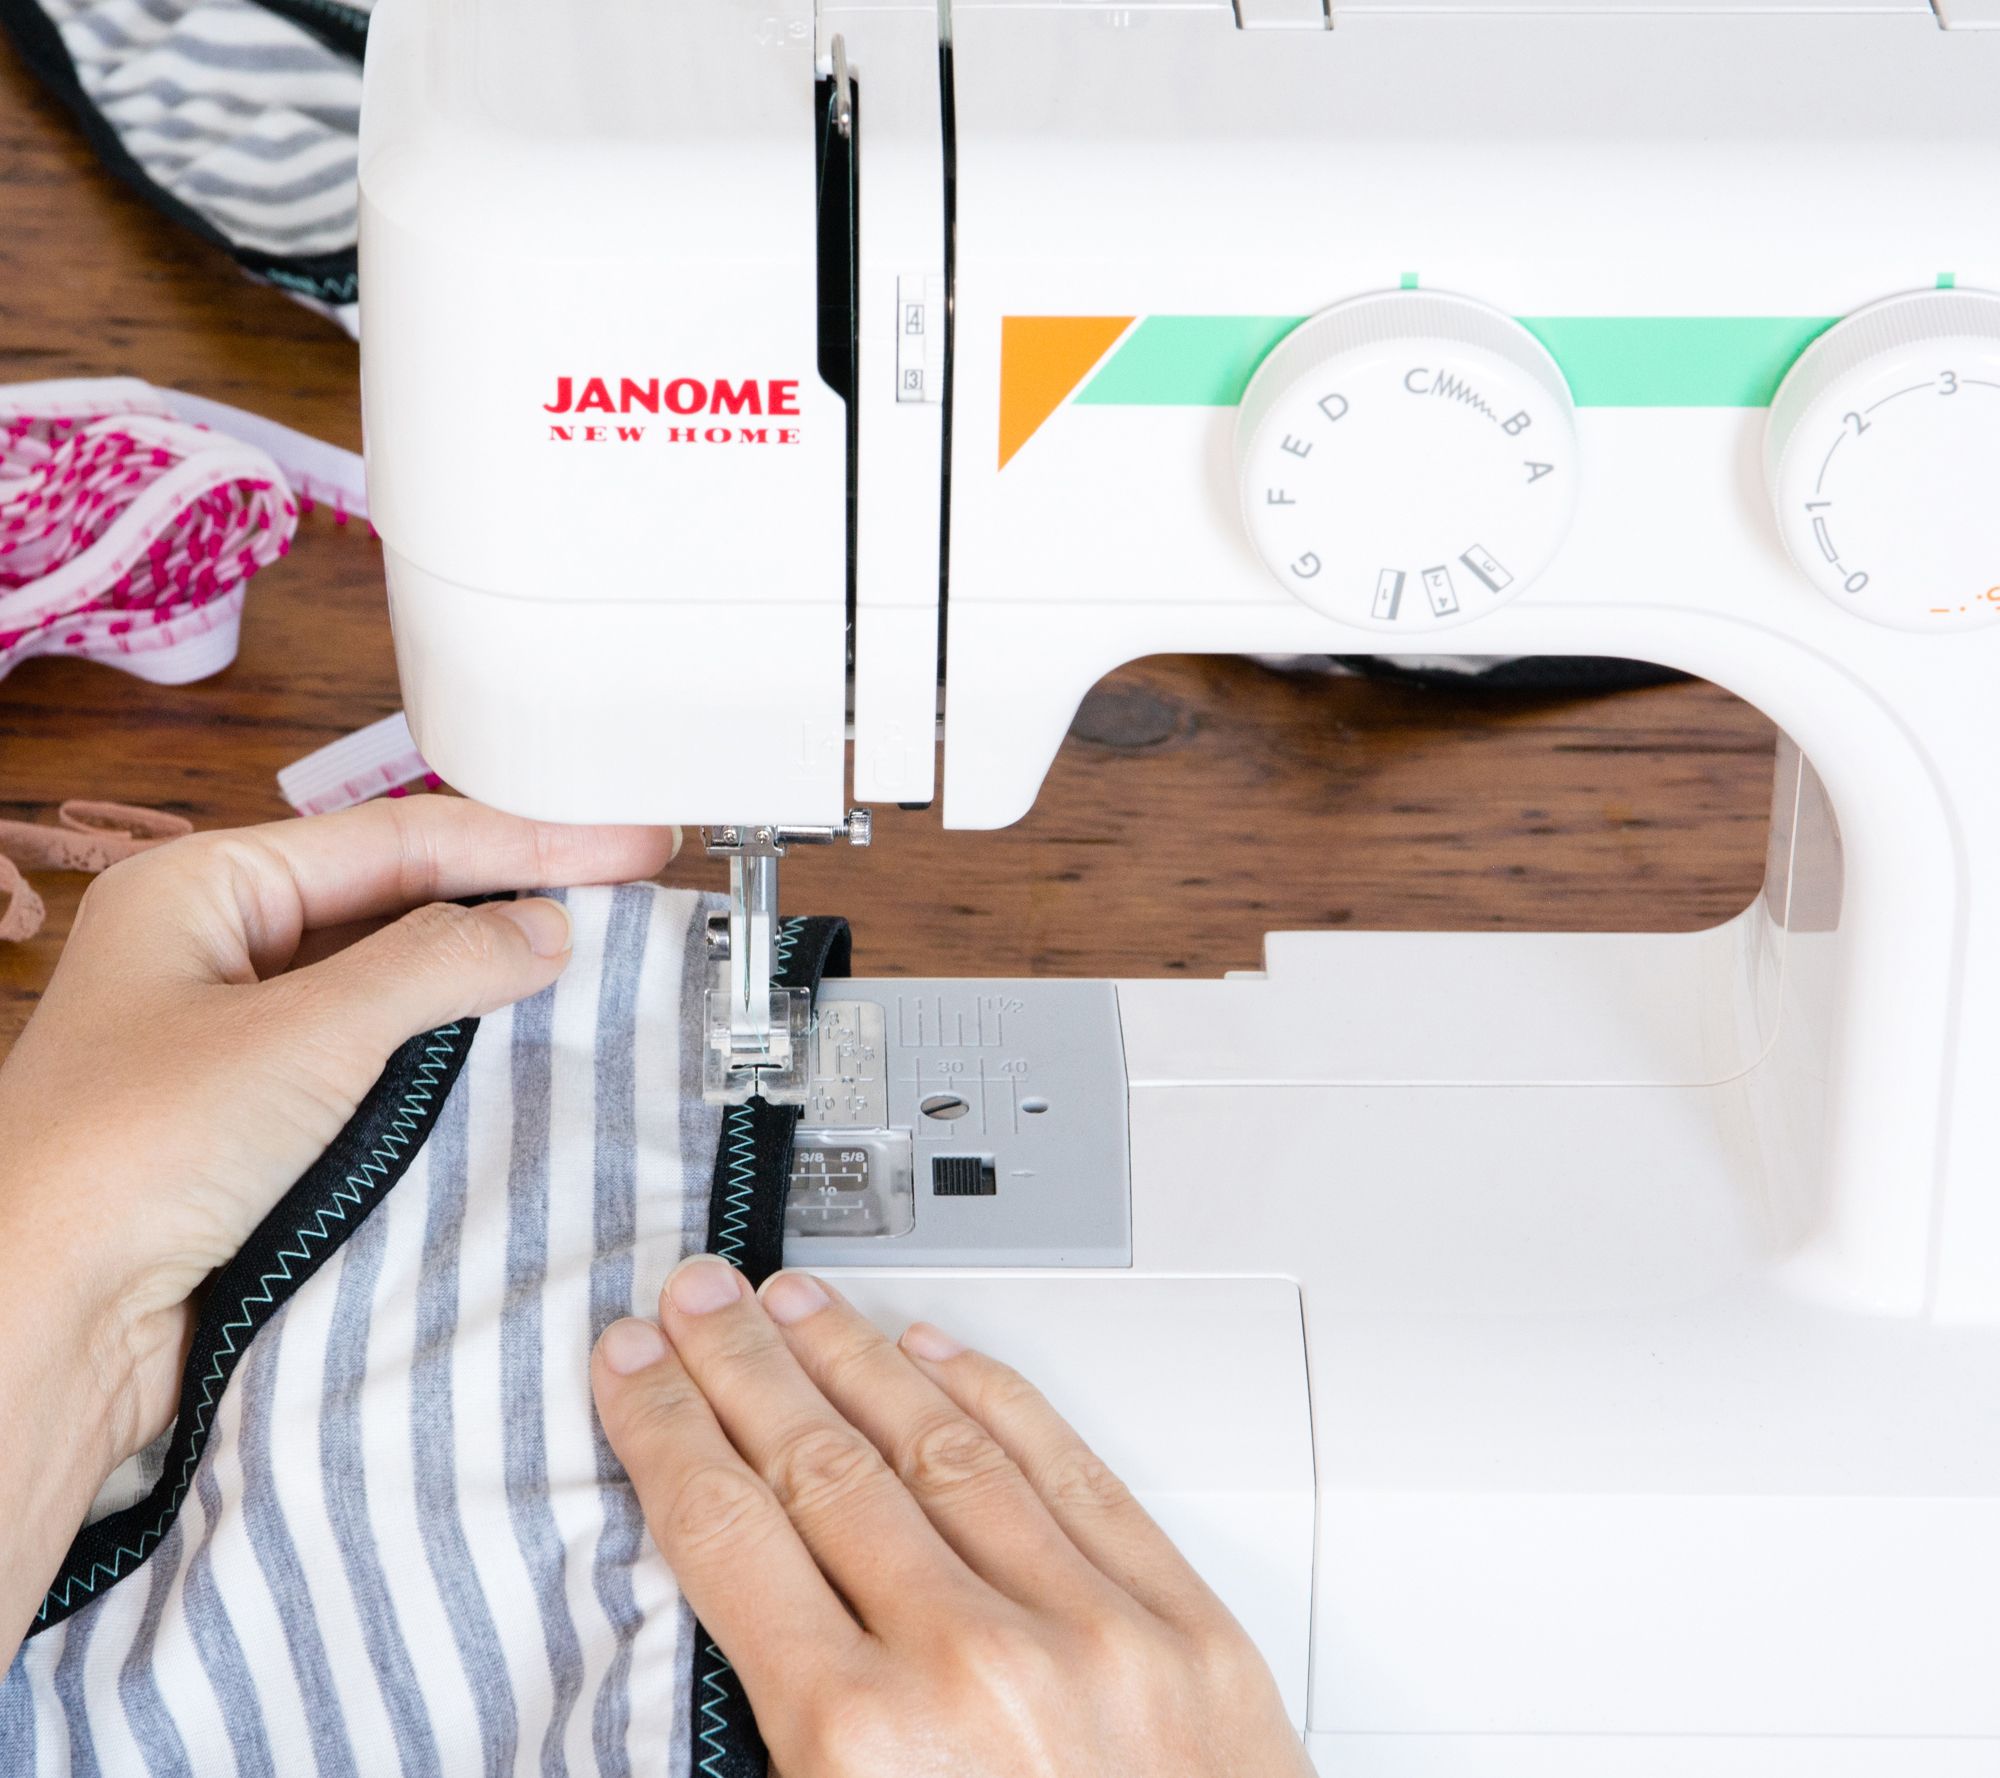 Швейная машина Janome Sew easy. 4 Step buttonhole швейная машина. Easy Stitch швейная машинка. Швейная машинка fappyco Stitch length. Машинка easy